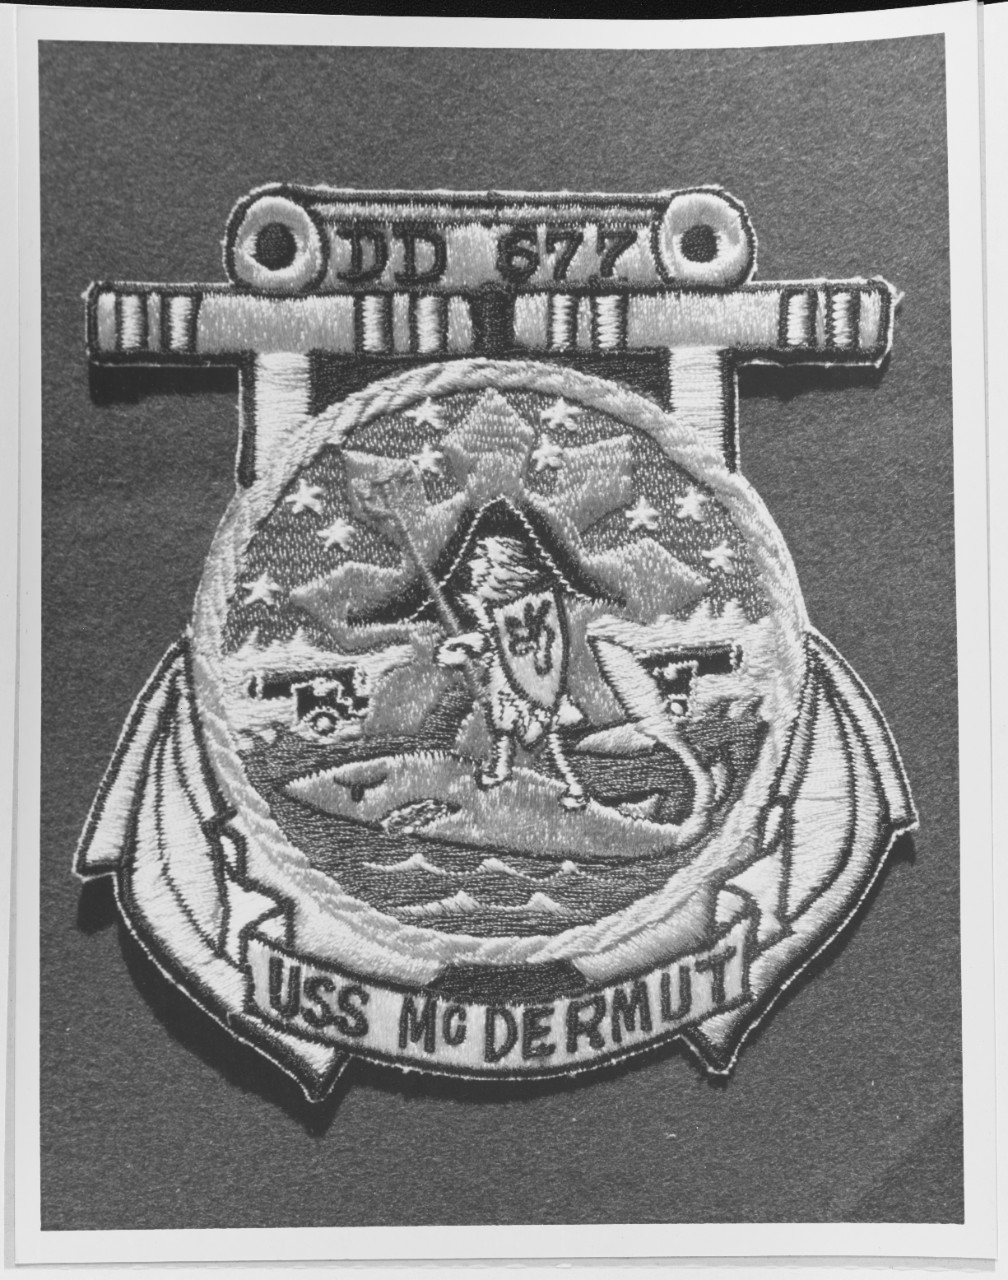 Insignia:  USS MCDERMUT (DE-677)